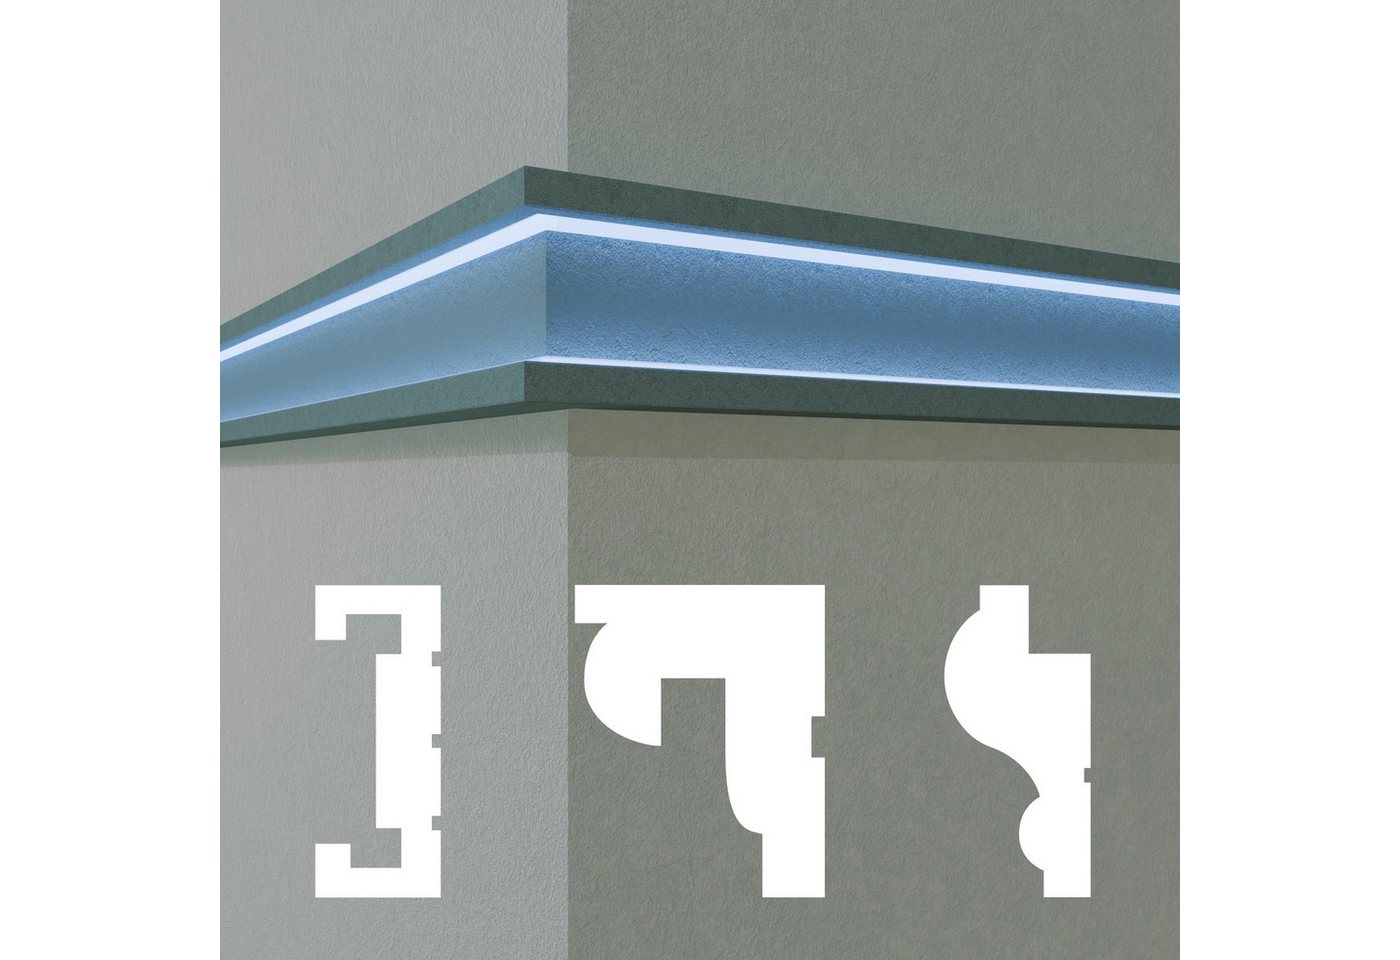 Hexim Stuckleiste DLED-10, 2 Meter / 1 Profil, LED Fassadenprofil aus EPS - Indirekte Beleuchtung mit Fassaden Stuckleisten - (DLED-10, 60 x 150 mm, 2 Meter / 1 Profil) Stuckprofile Fassadenverkleidung außenbereich von Hexim